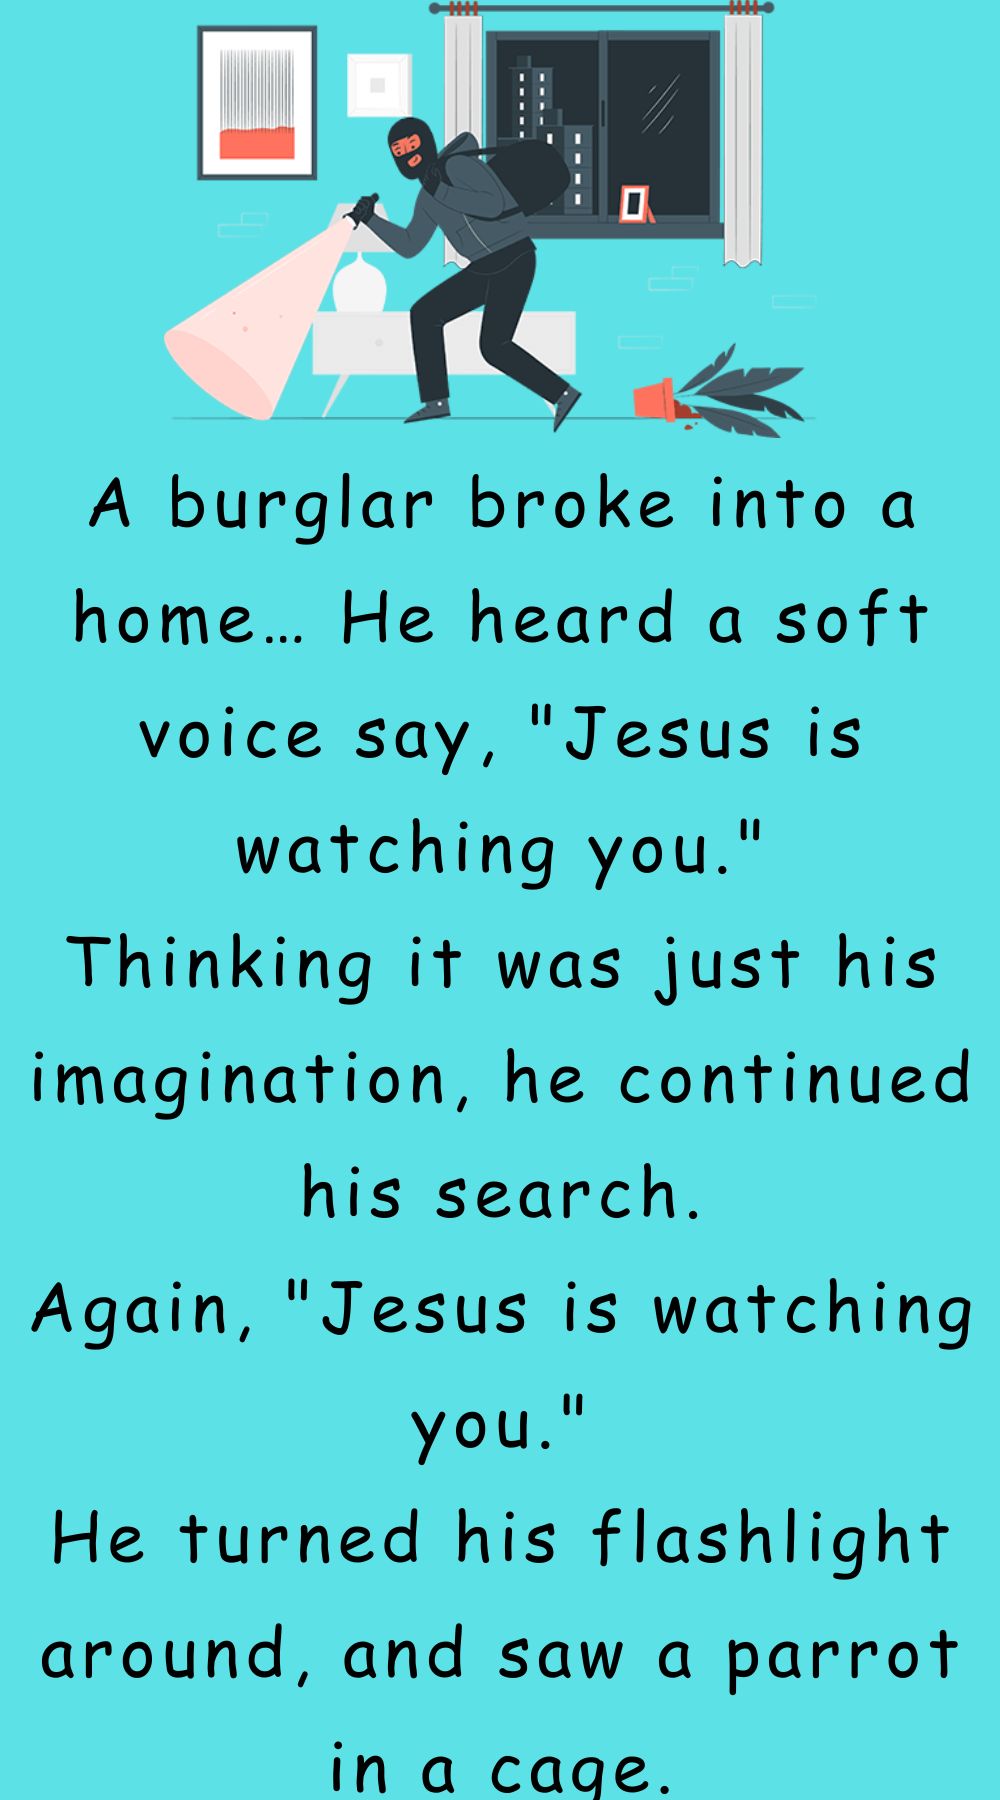 A burglar broke into a home